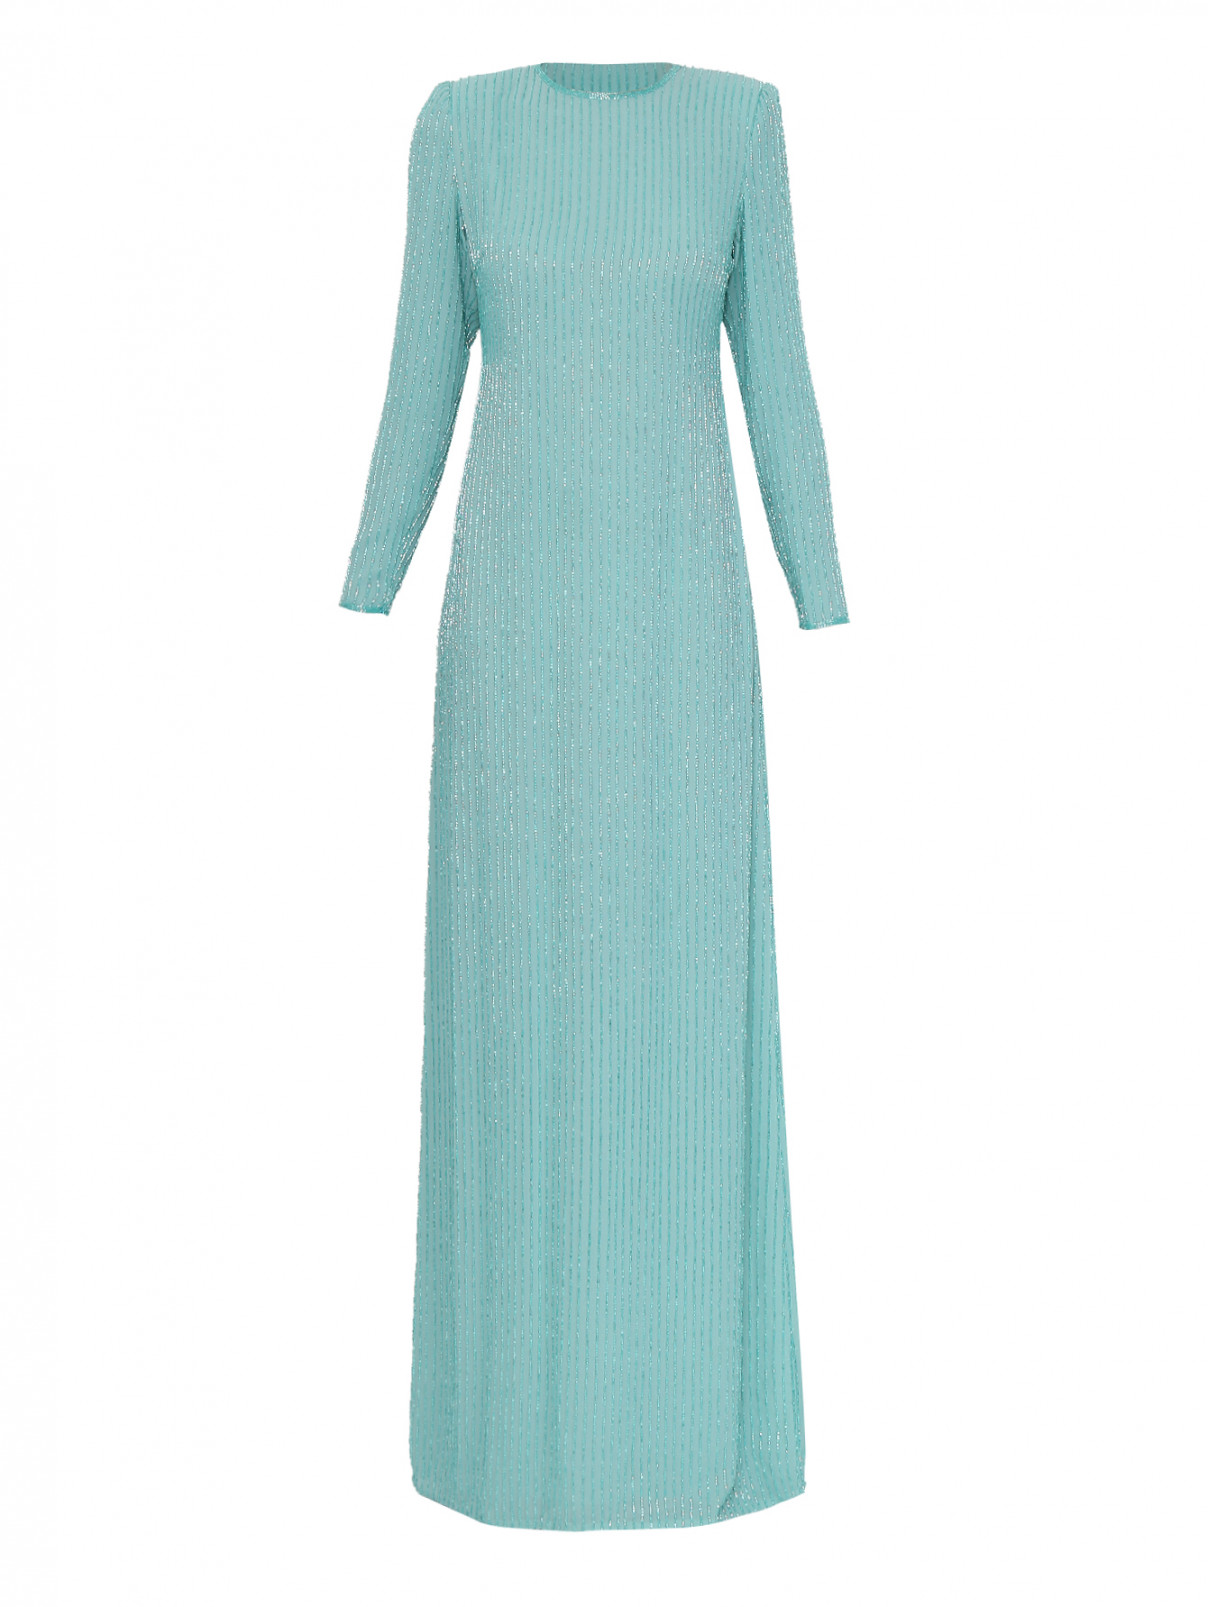 платье-макси прямого кроя с вышивкой бисером Elisabetta Franchi  –  Общий вид  – Цвет:  Синий